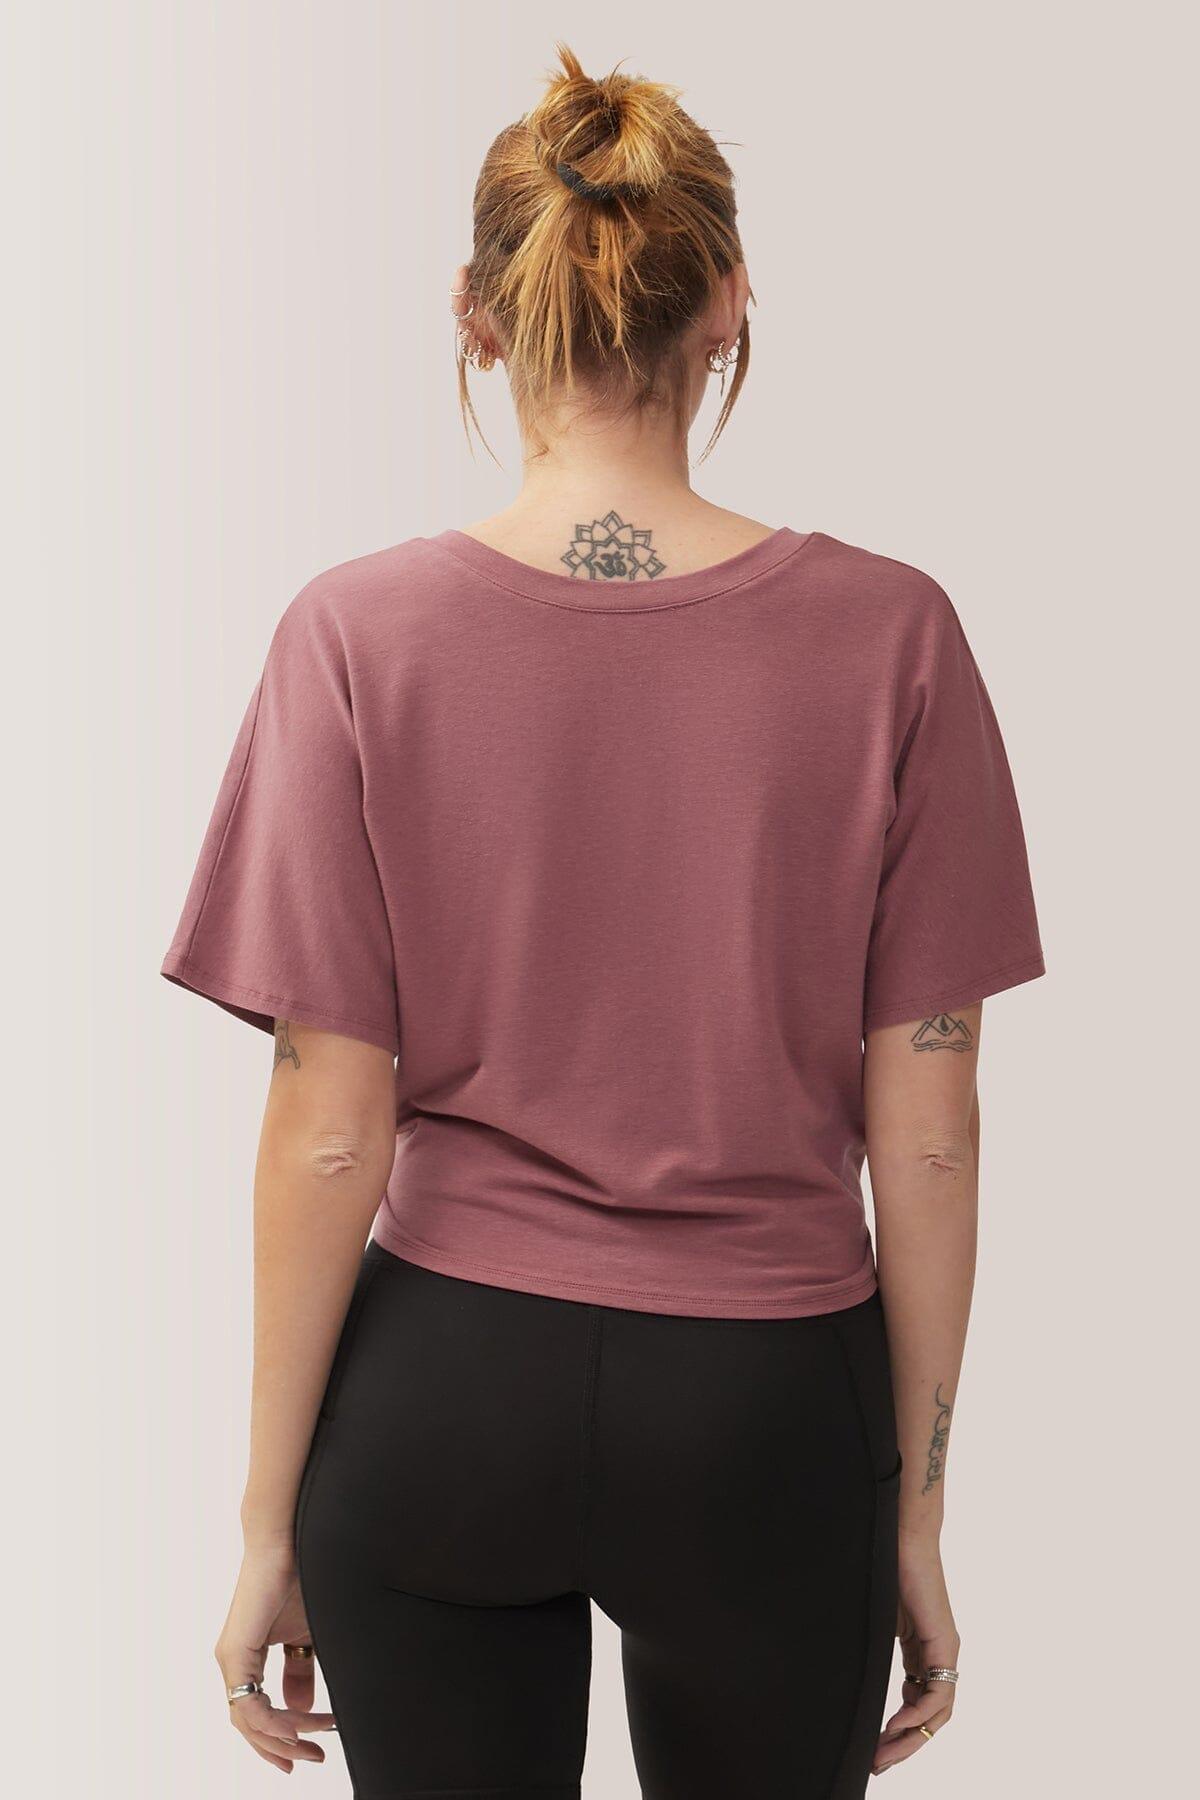 Femme qui porte le t-shirt Jasper de Rose Boreal./ Women wearing the Jasper T-Shirt by Rose Boreal. -Goddess / Déesse